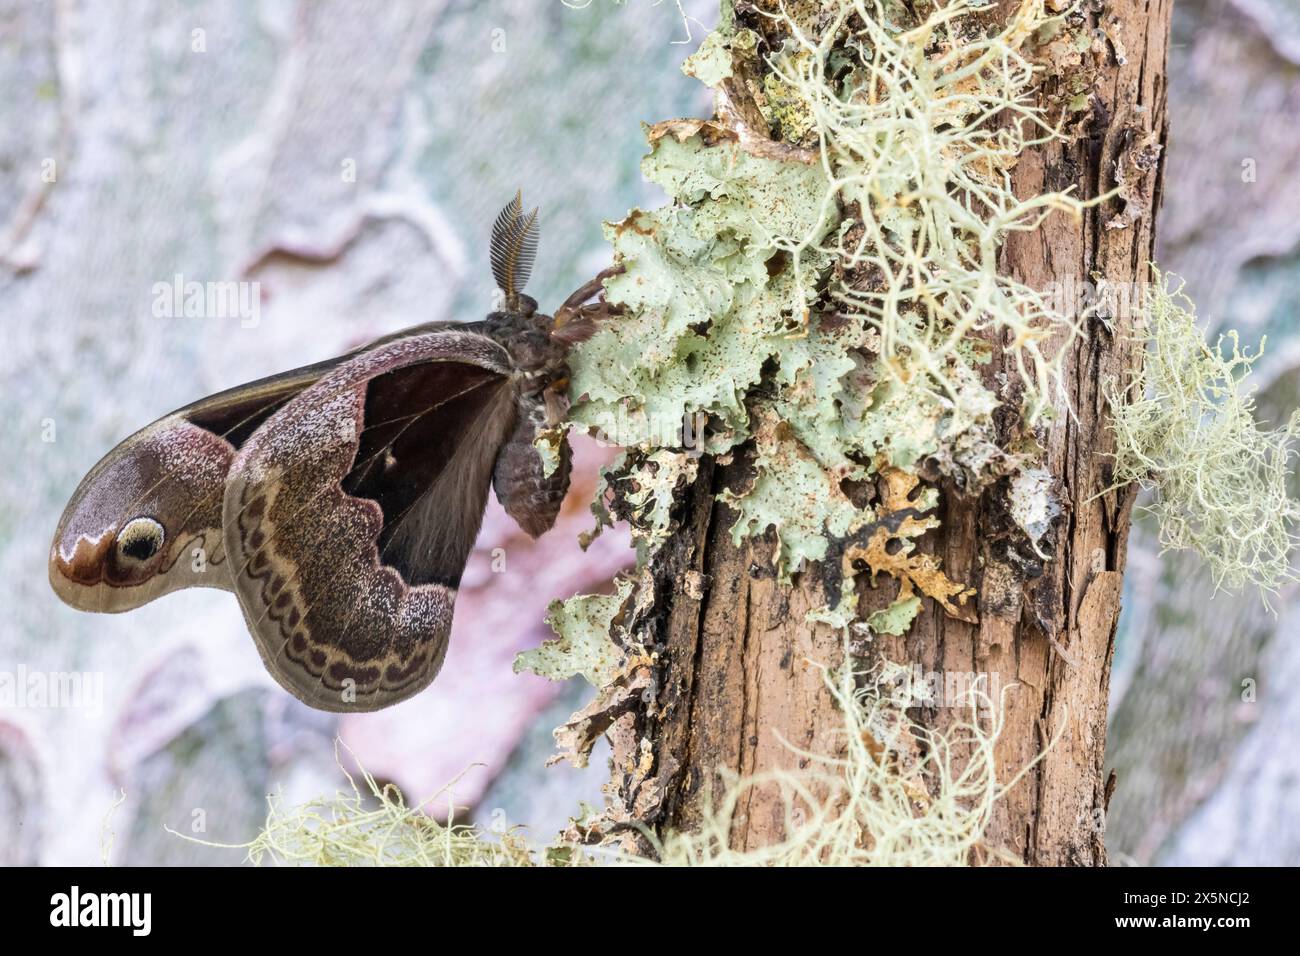 Stati Uniti, Stato di Washington, Sammamish. Falena di seta promethea maschile su ramo coperto di lichene Foto Stock